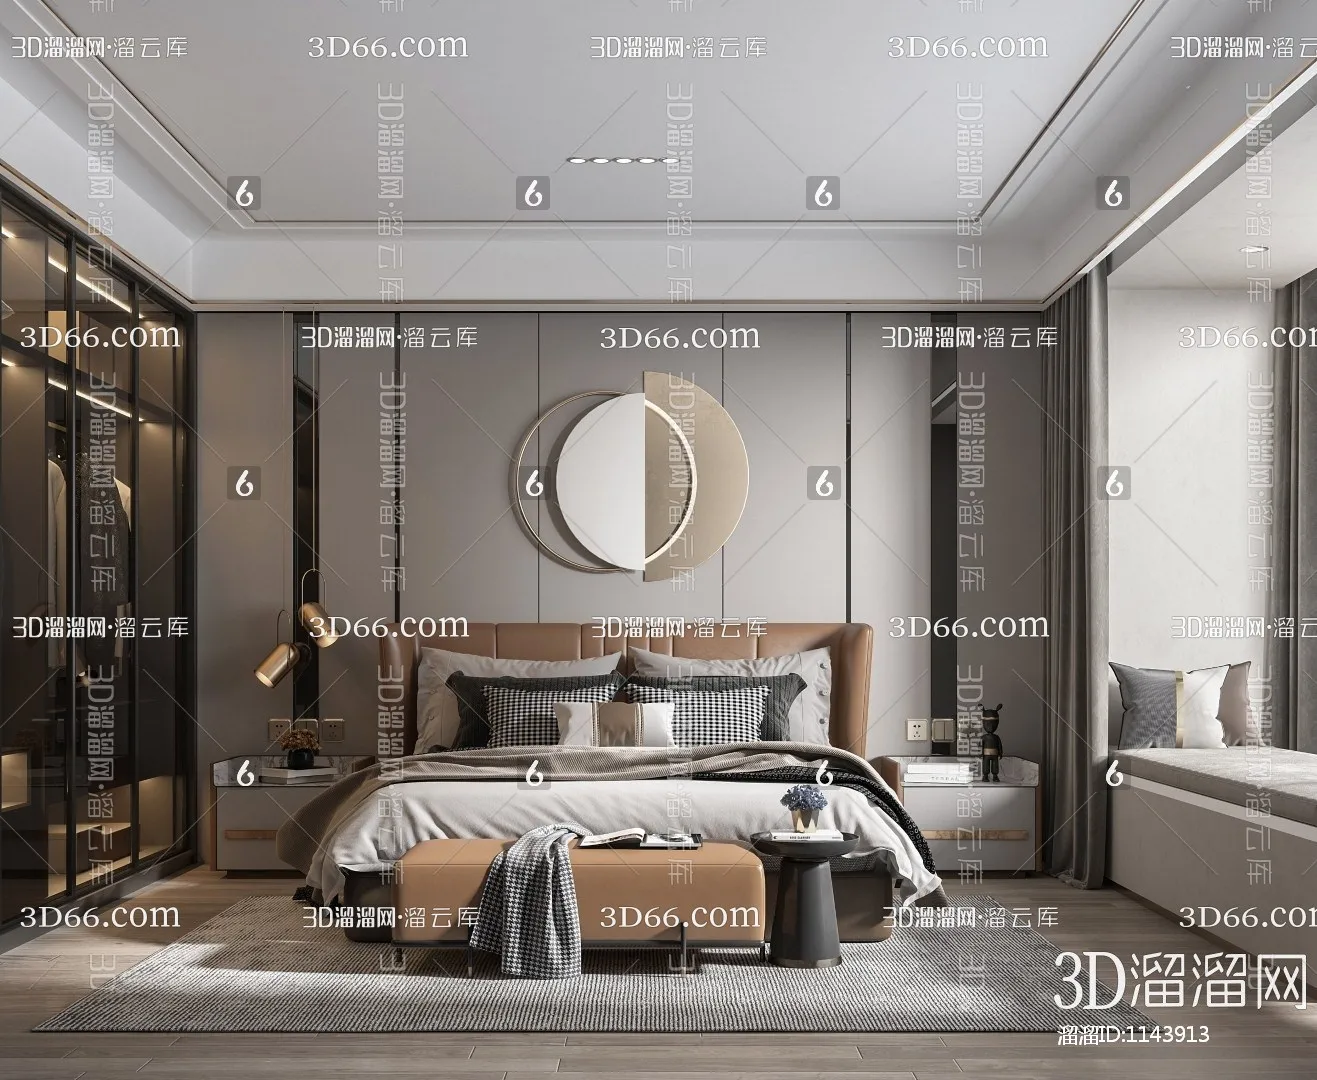 Bedroom 3D Scenes – 0186